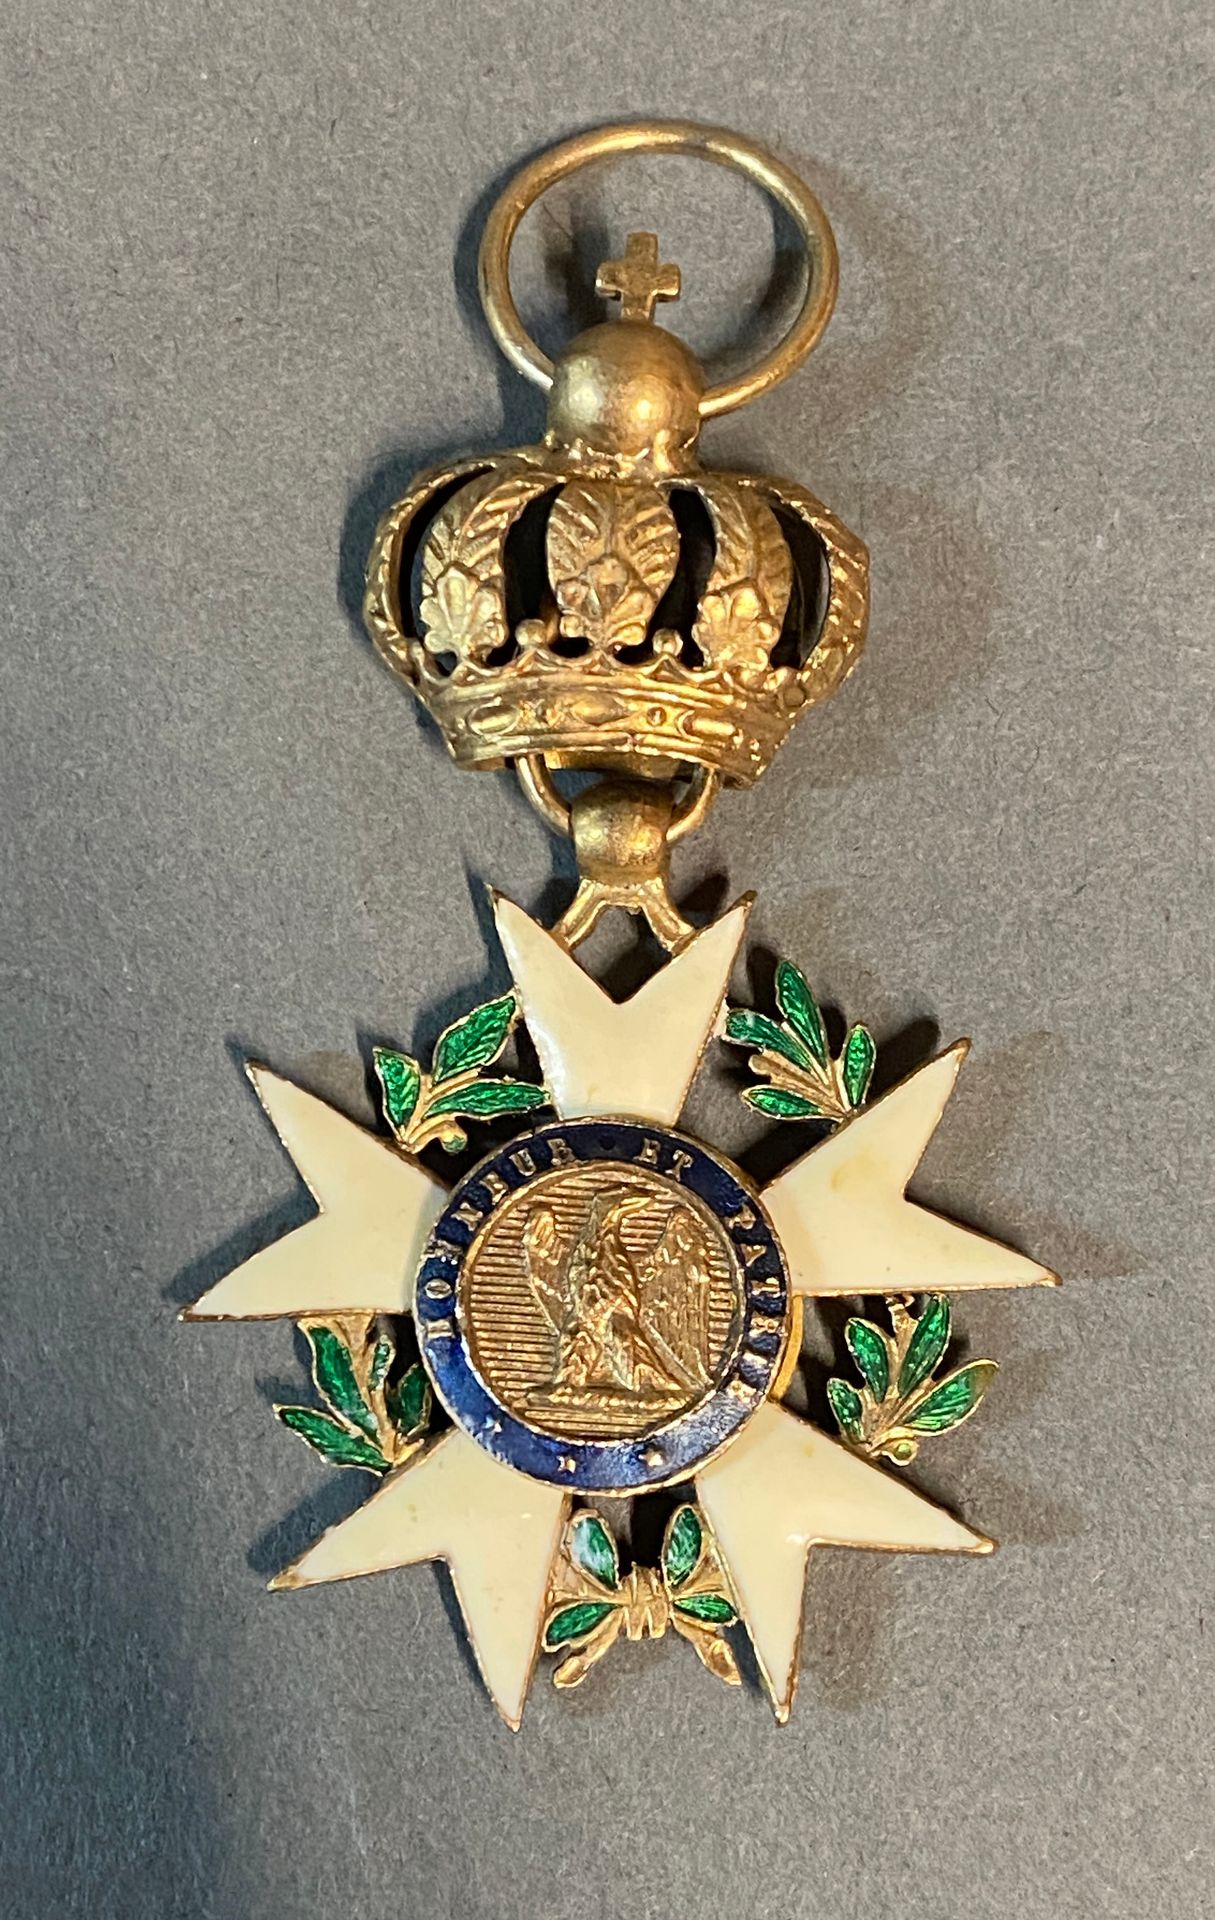 Null Legione d'onore istituita nel 1802

Croce da ufficiale in bronzo dorato. 

&hellip;